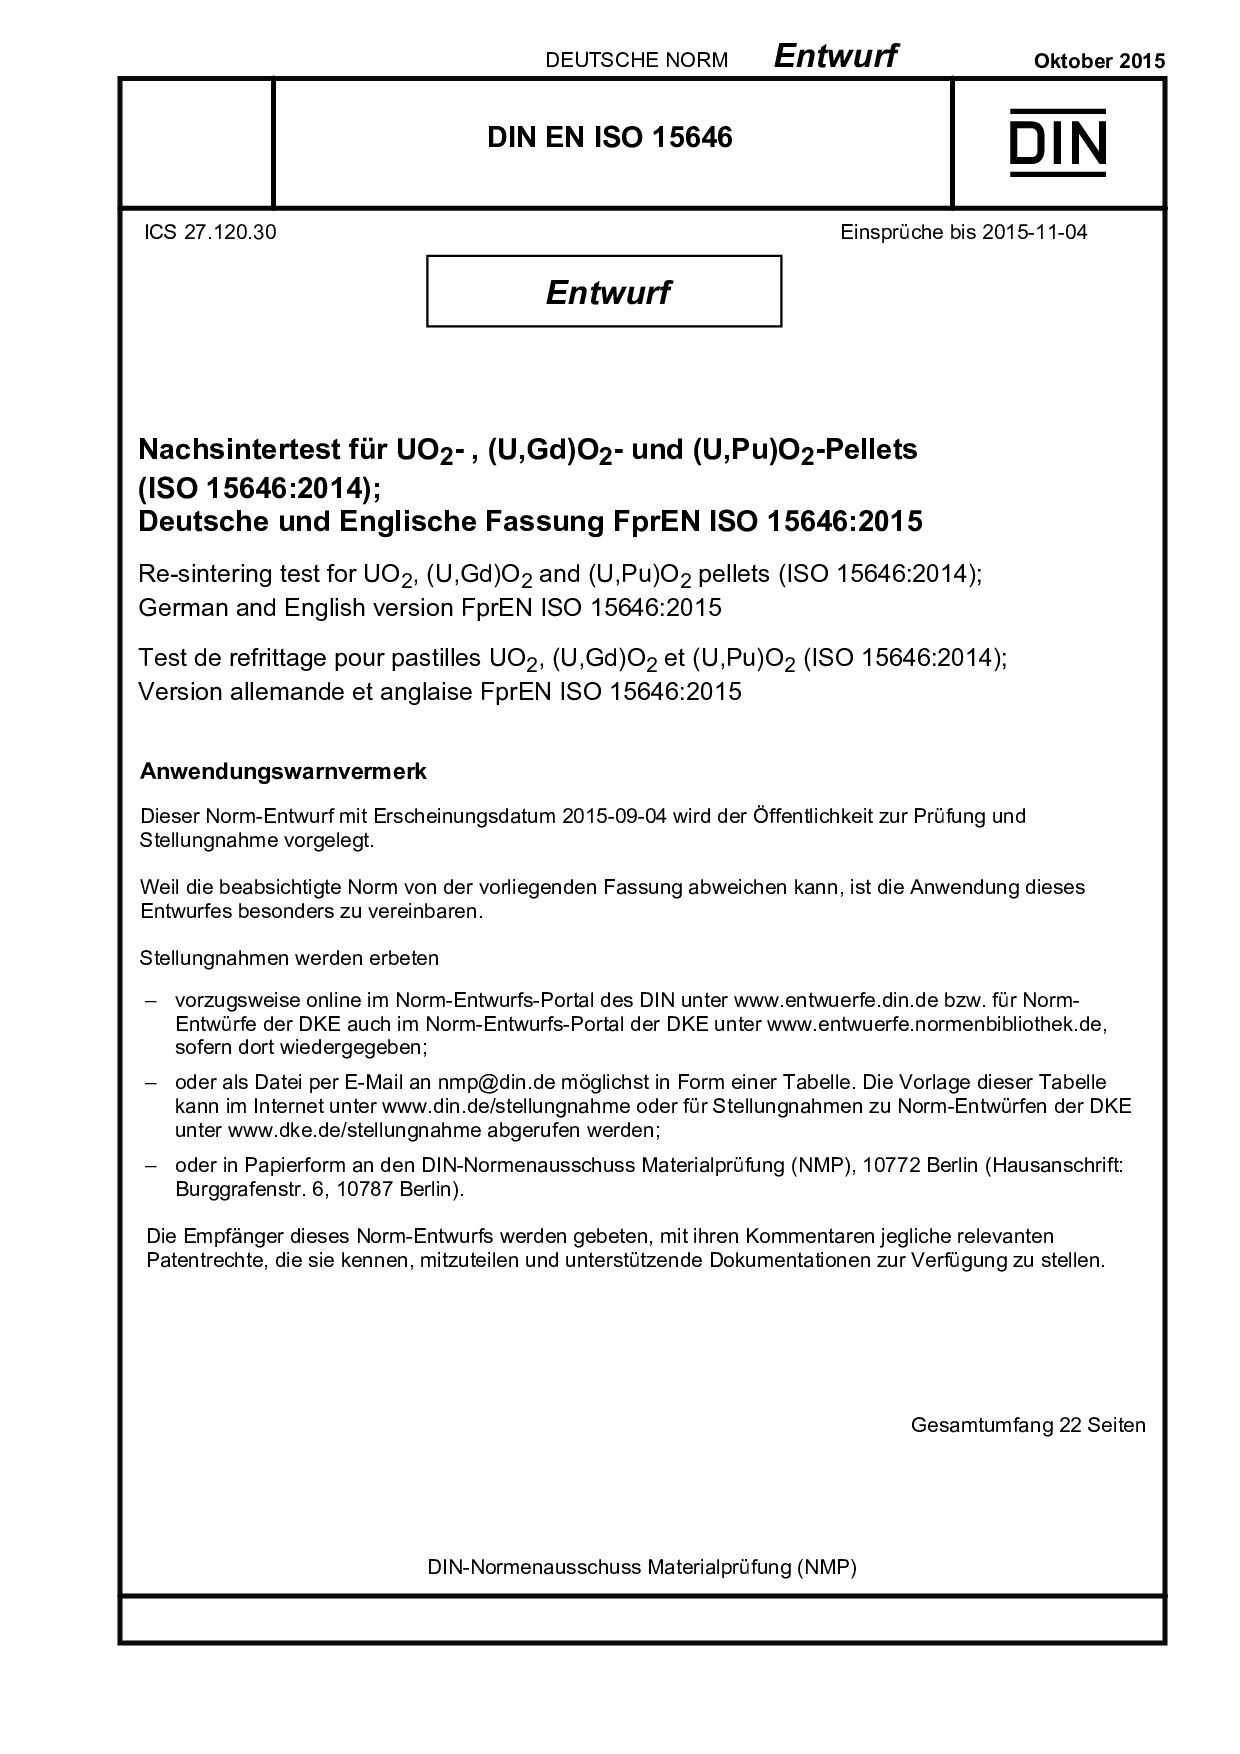 DIN EN ISO 15646 E:2015-10封面图